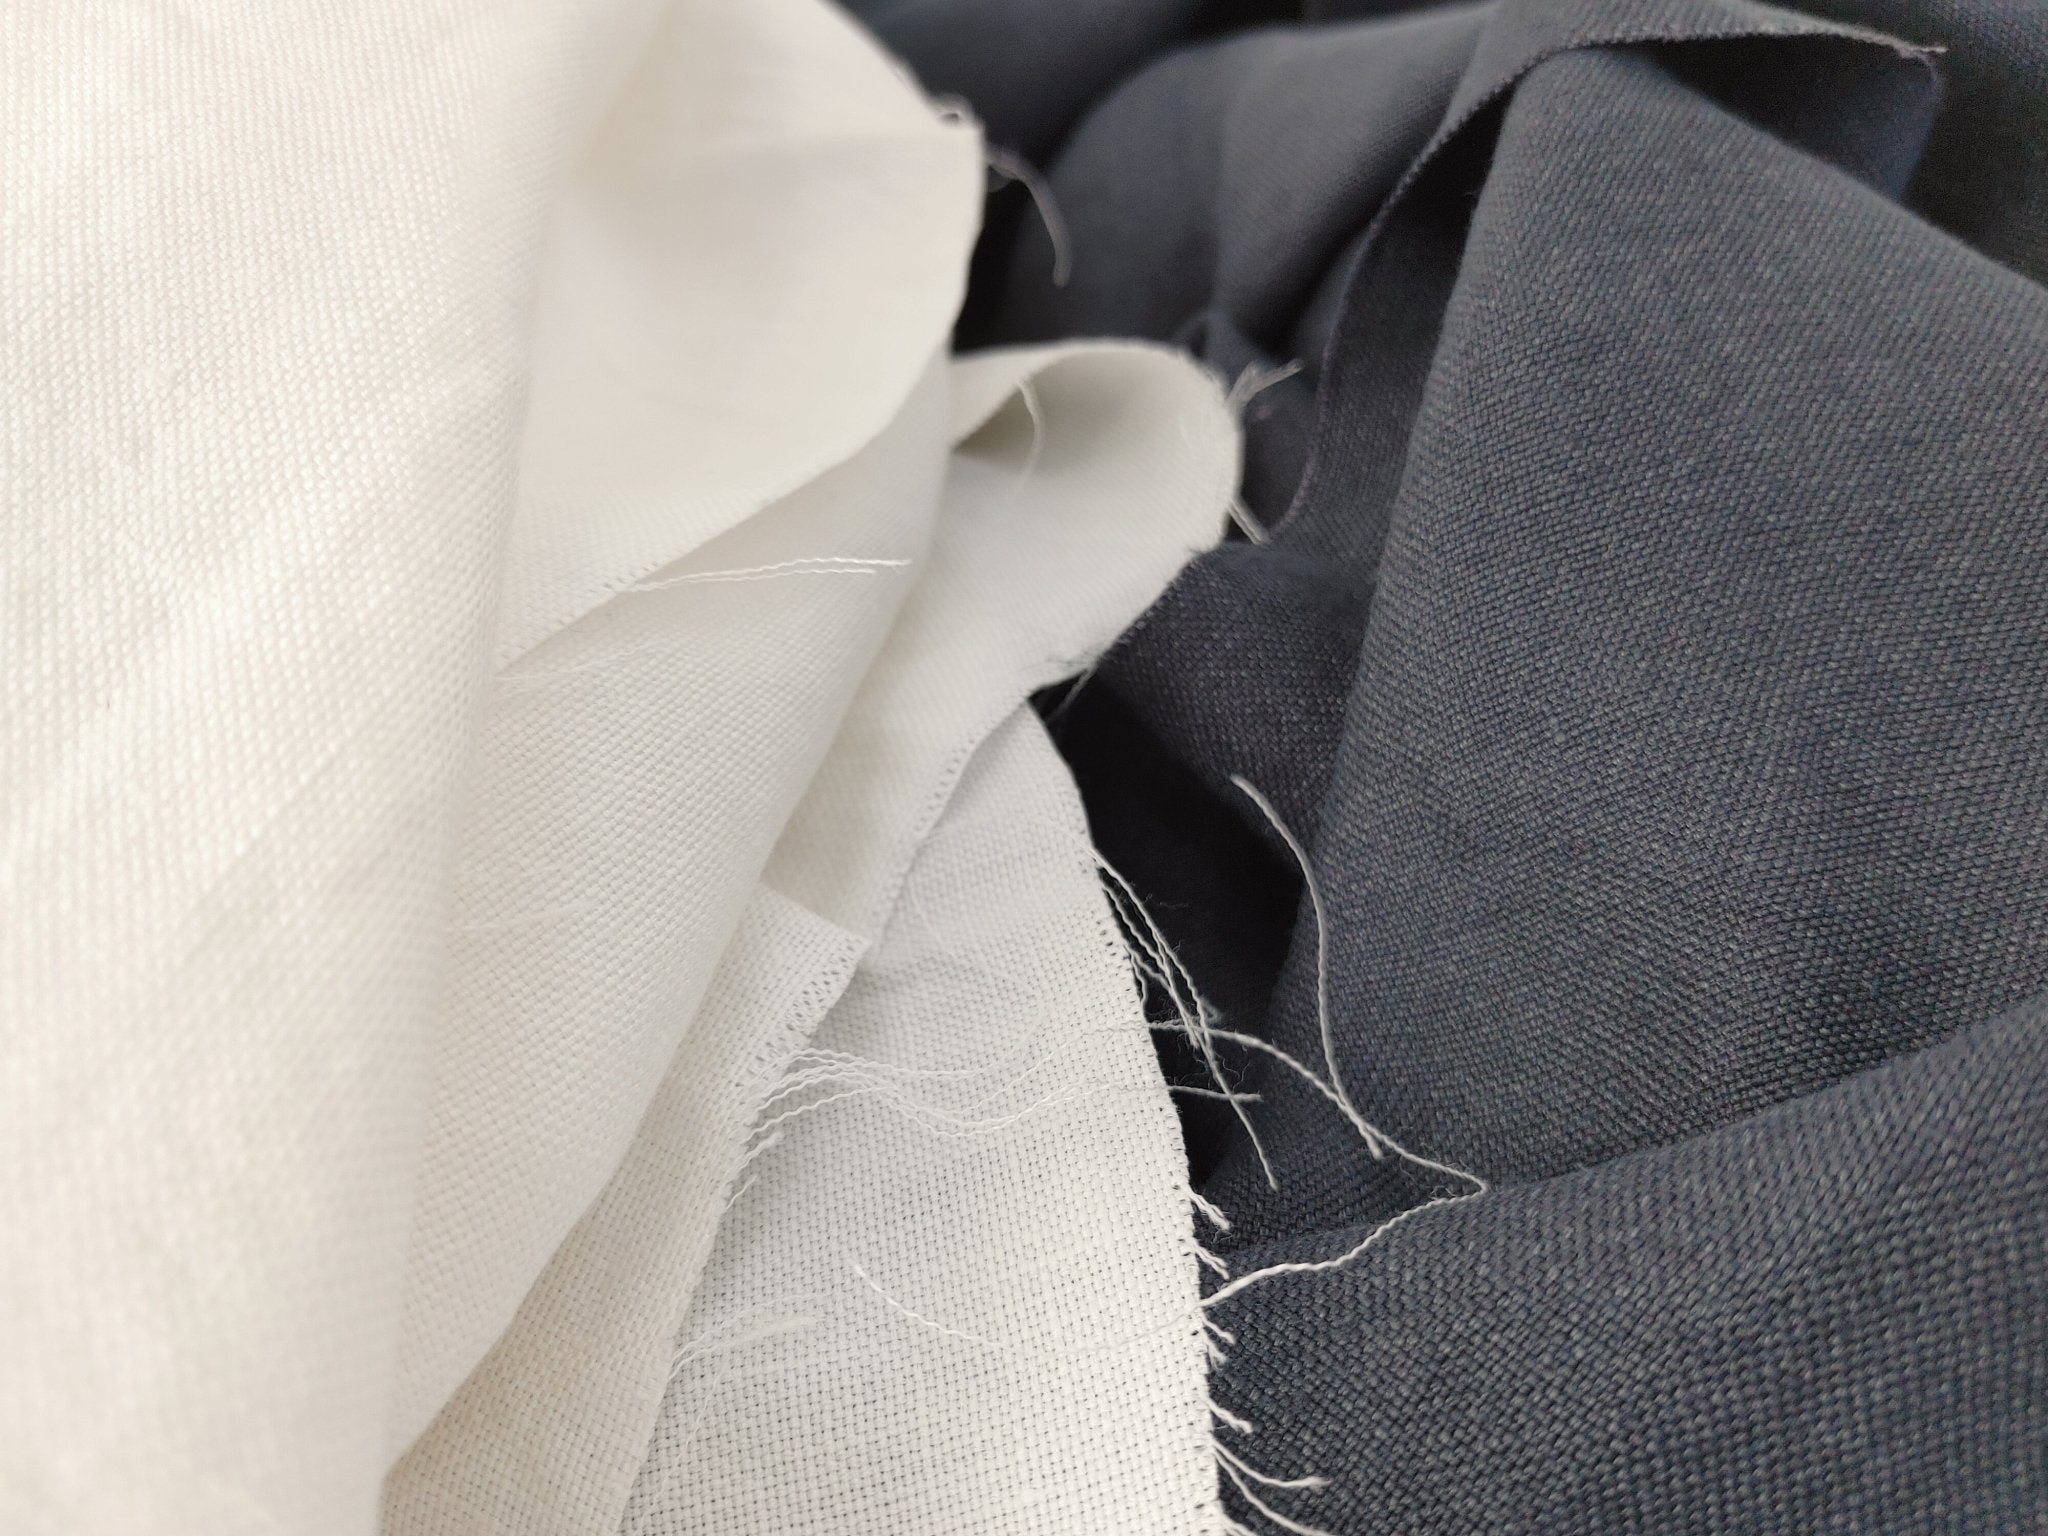 Silk Linen Canvas Mat Fabric 6555 6935 6494 - The Linen Lab - Blue